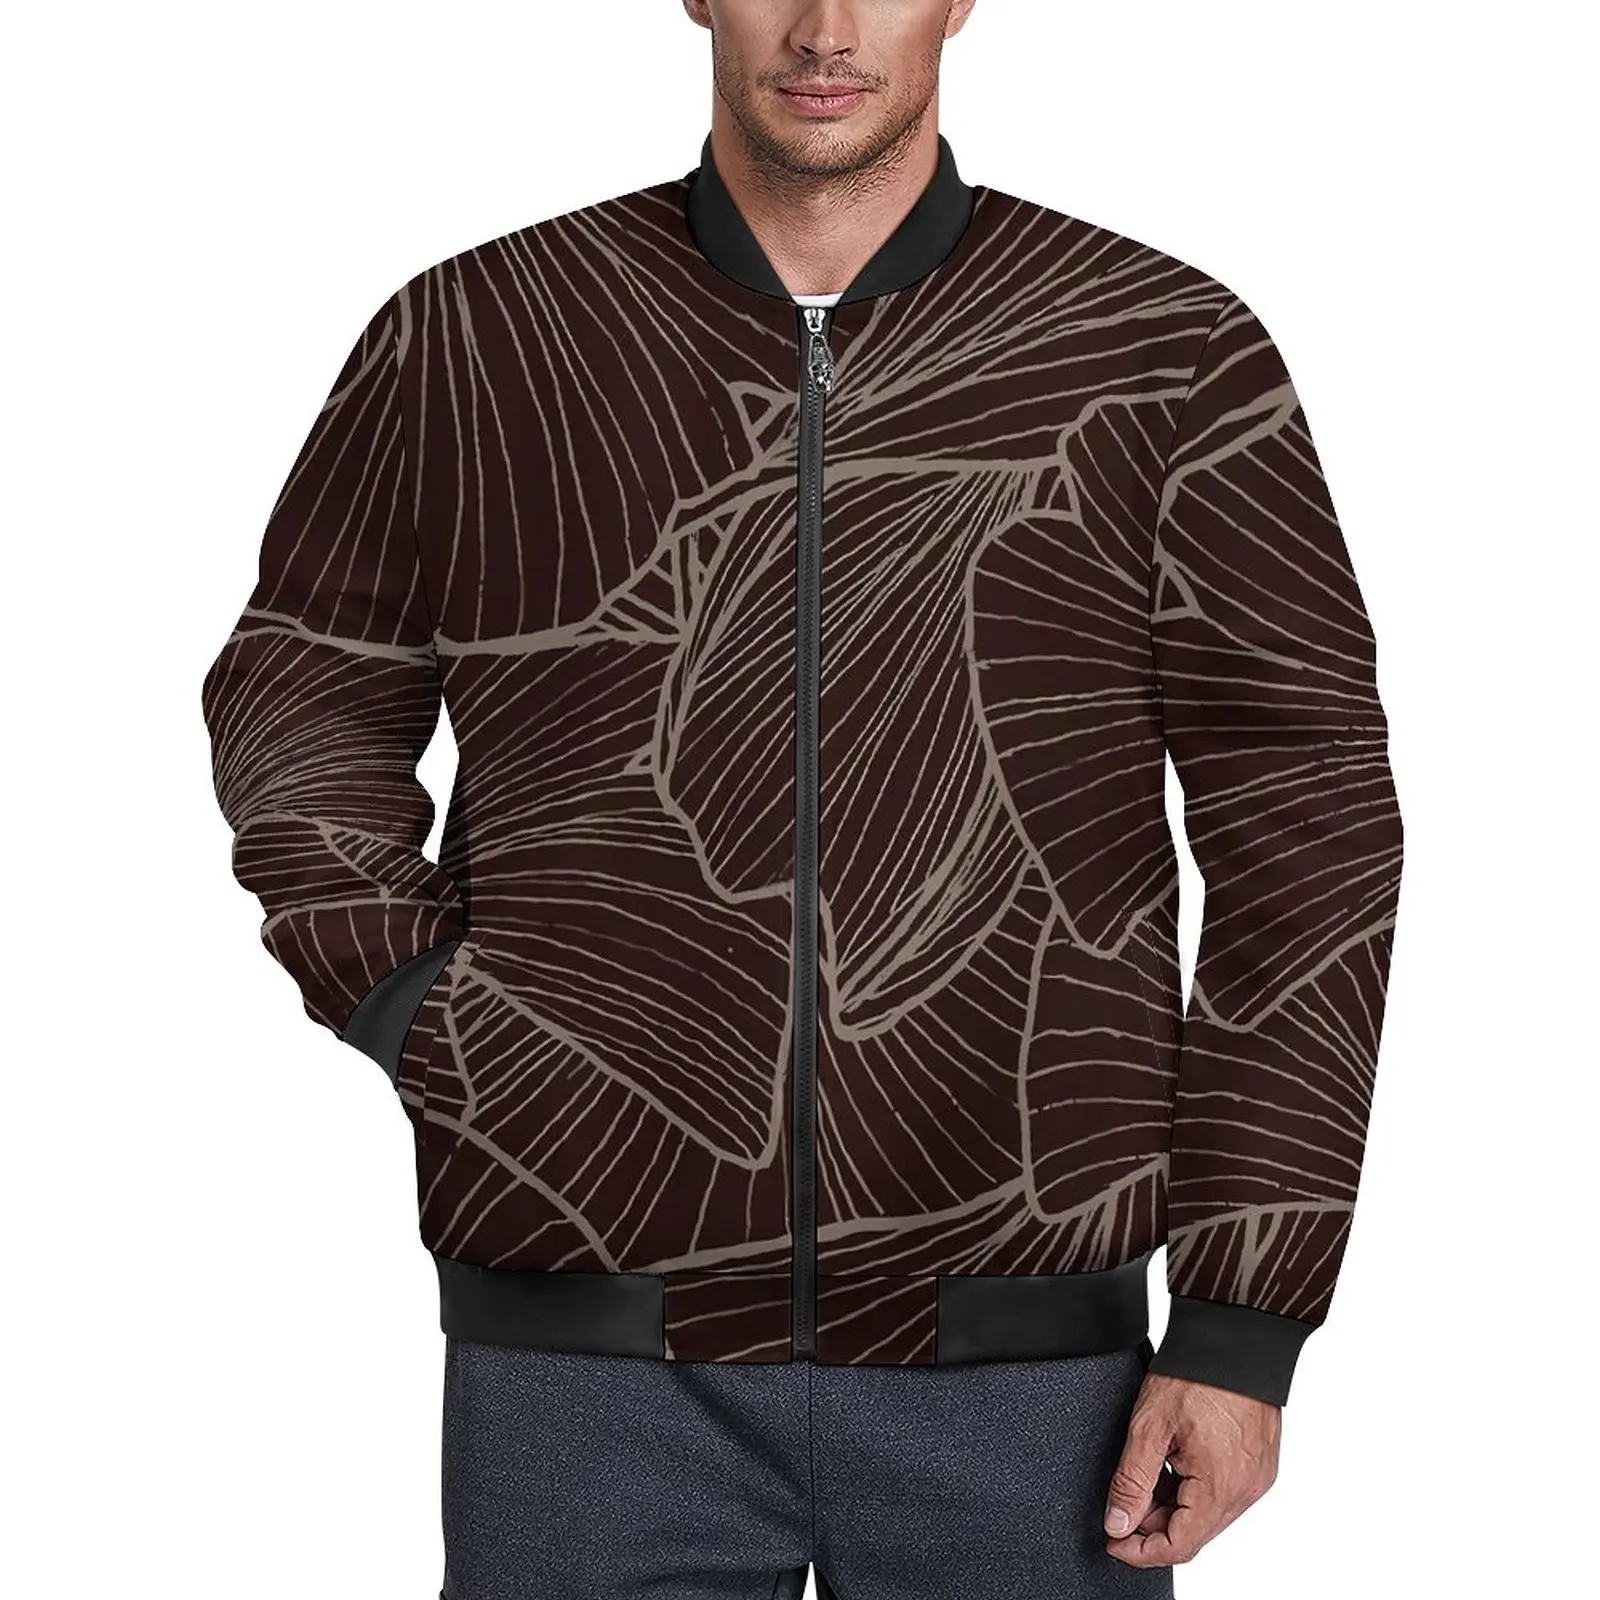 

Куртка Ginkgo Biloba мужская с принтом листьев, повседневная верхняя одежда в уличном стиле, на молнии, свободная ветровка с графическим принтом, куртка оверсайз, зима